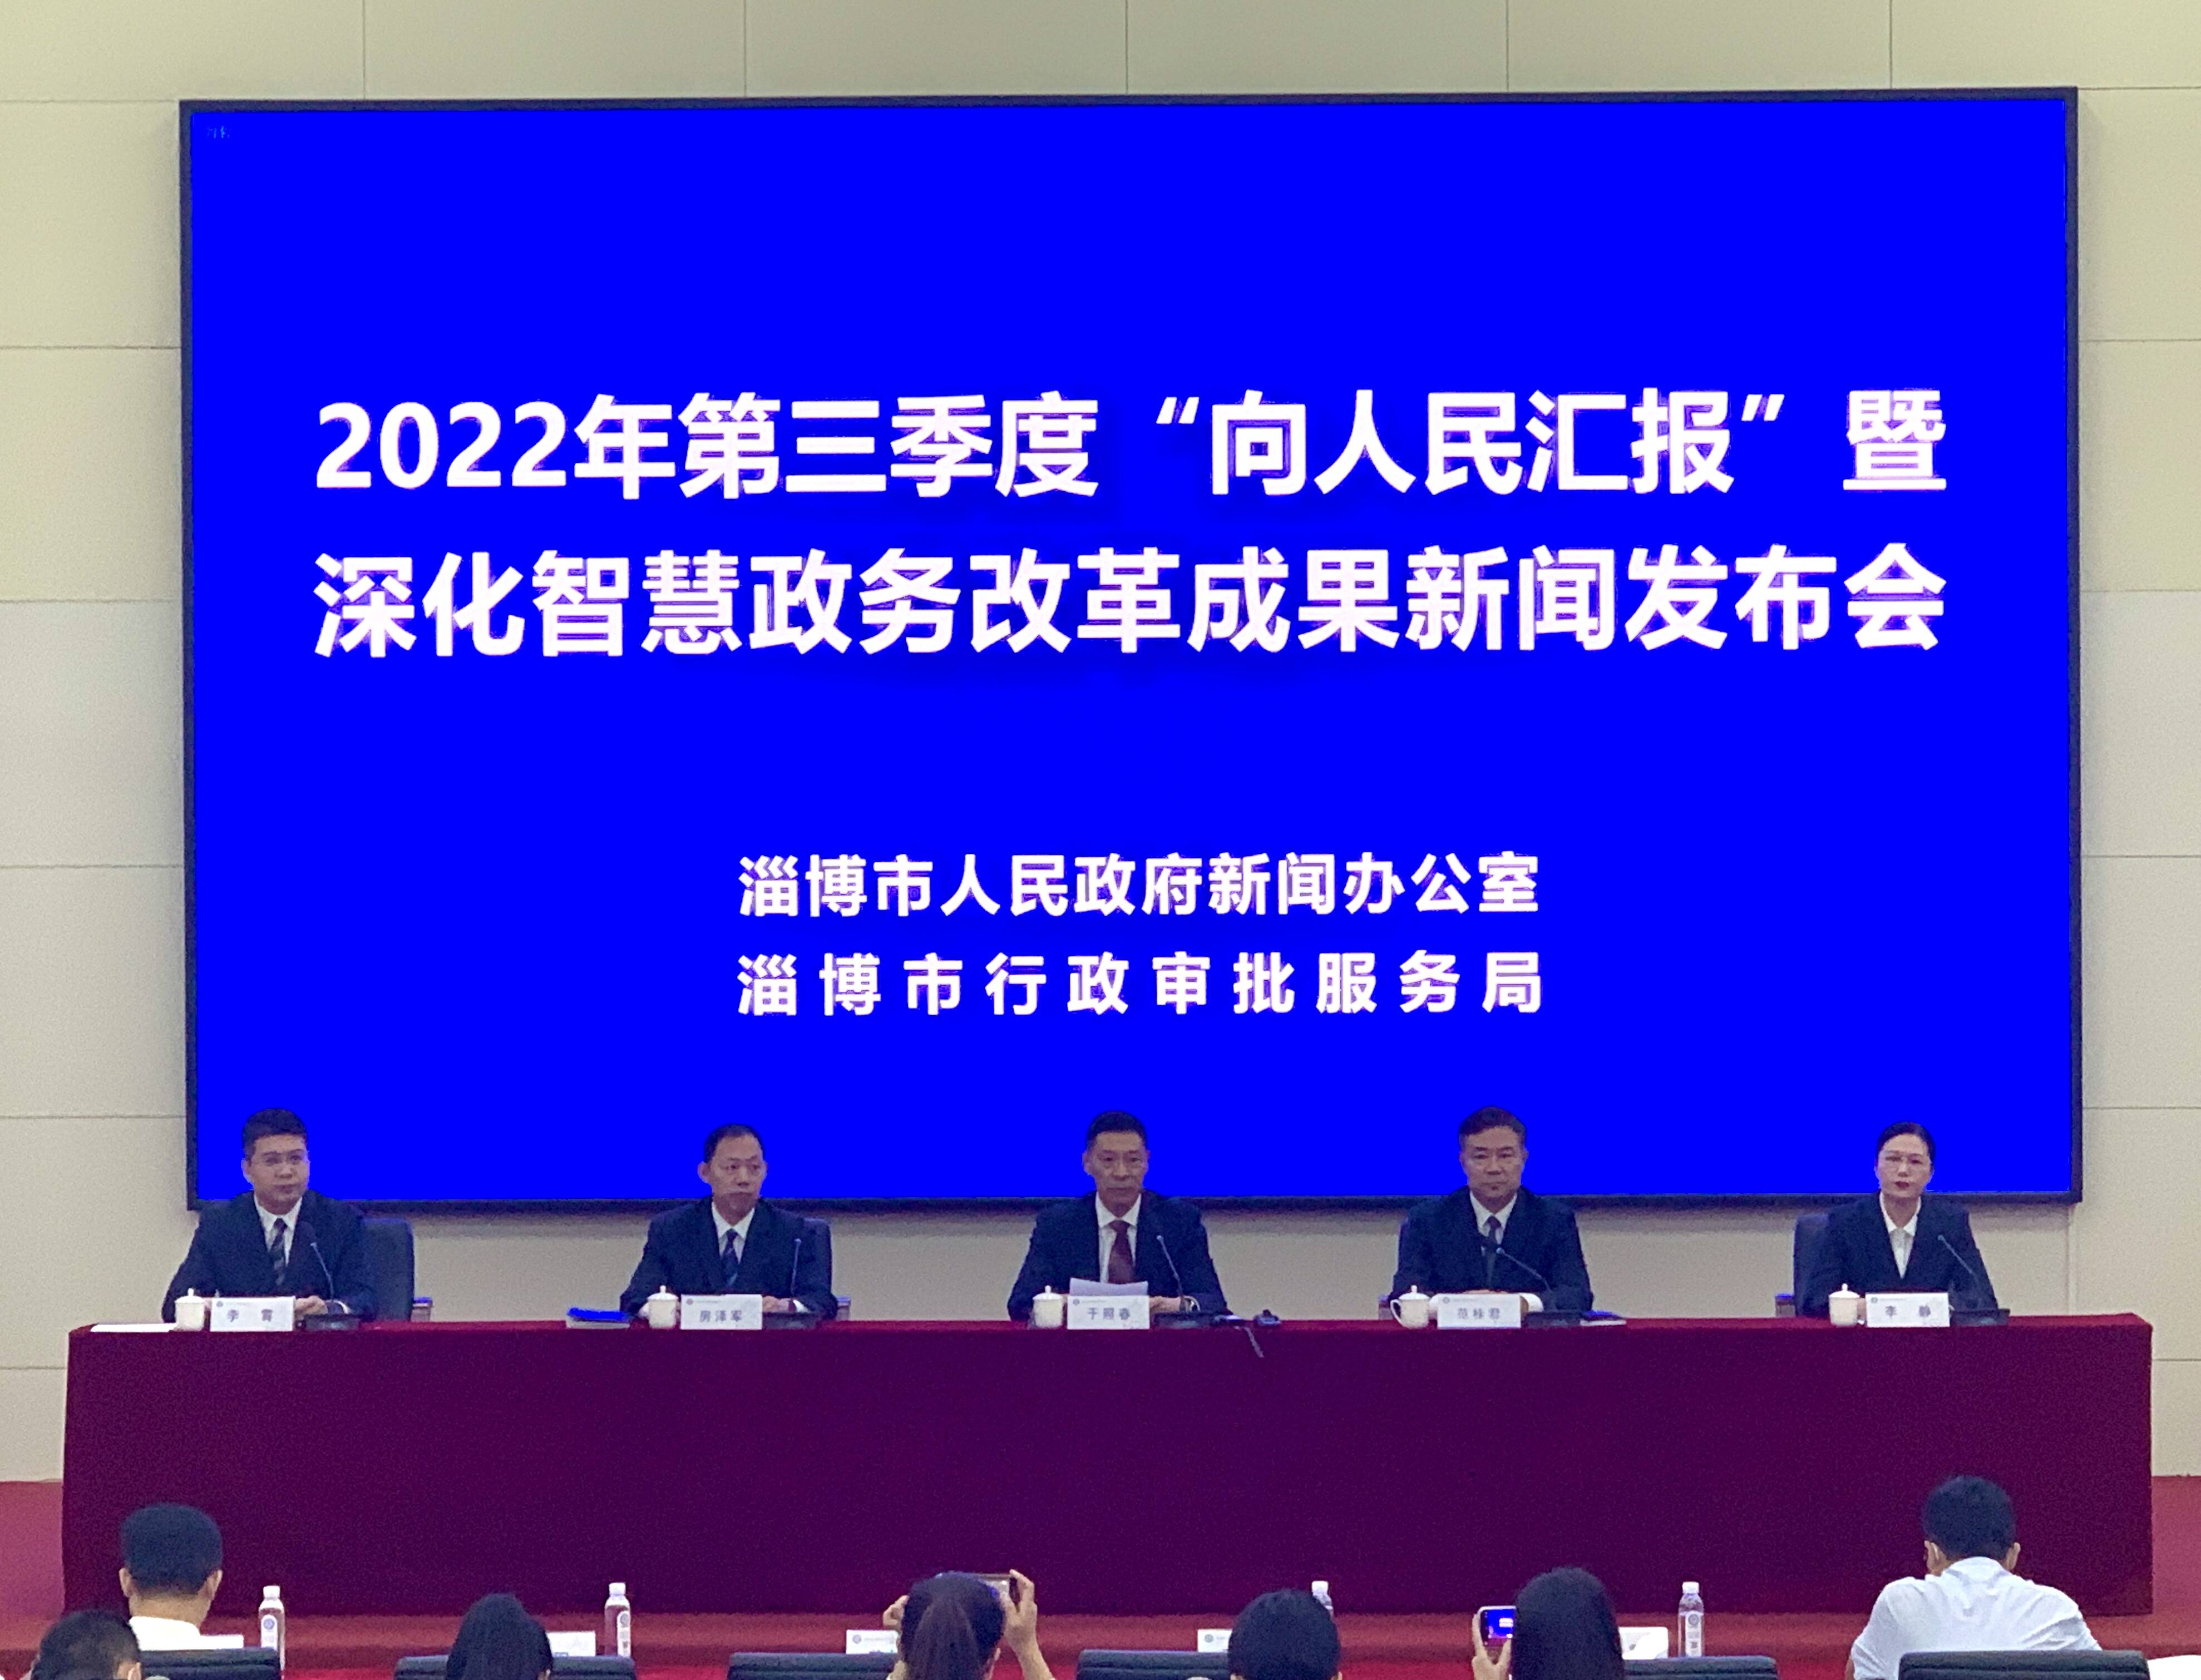 淄博市发布三项行政审批服务最新改革创新成果